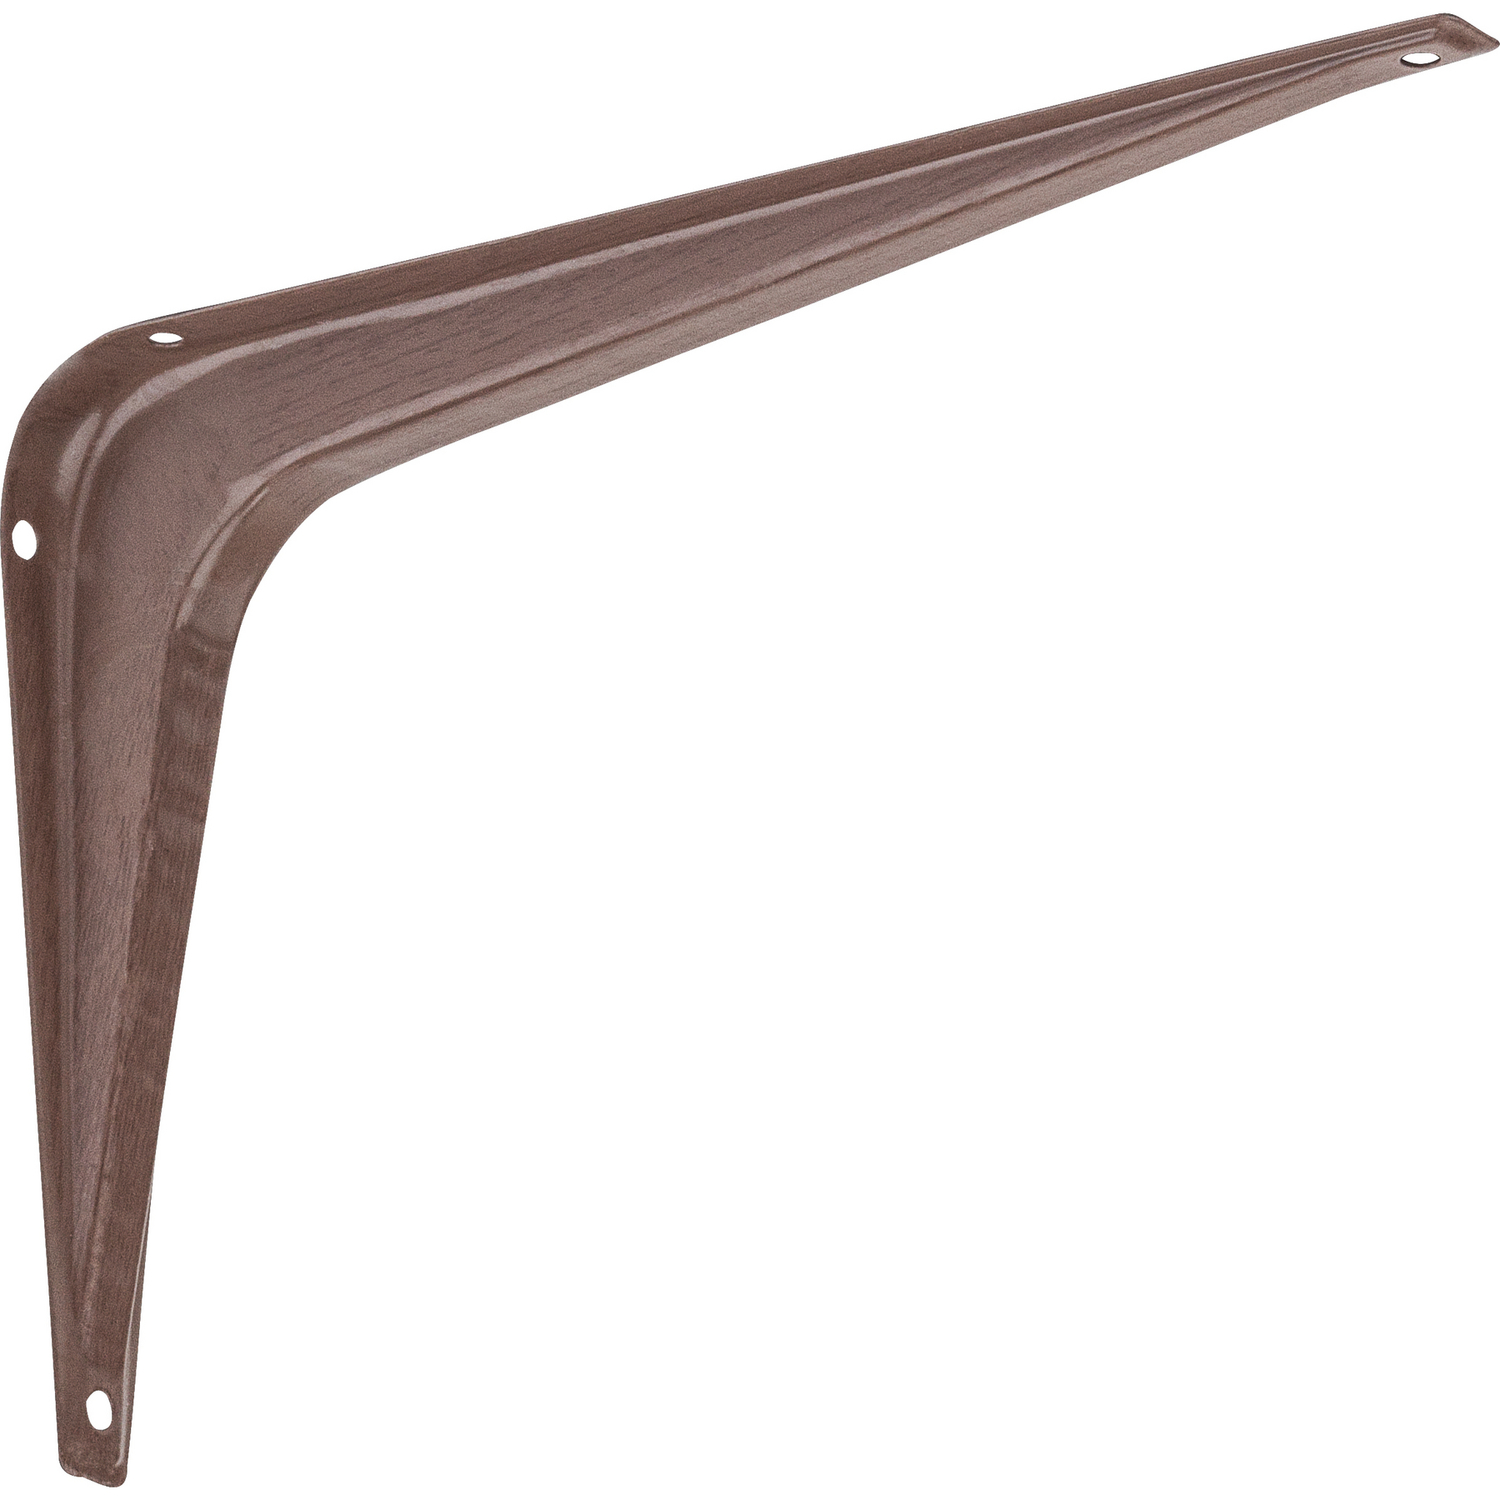 UPC 038613185029 product image for National Hardware Brown Steel Shelf Bracket 7/8 in. L 100 lb. | upcitemdb.com